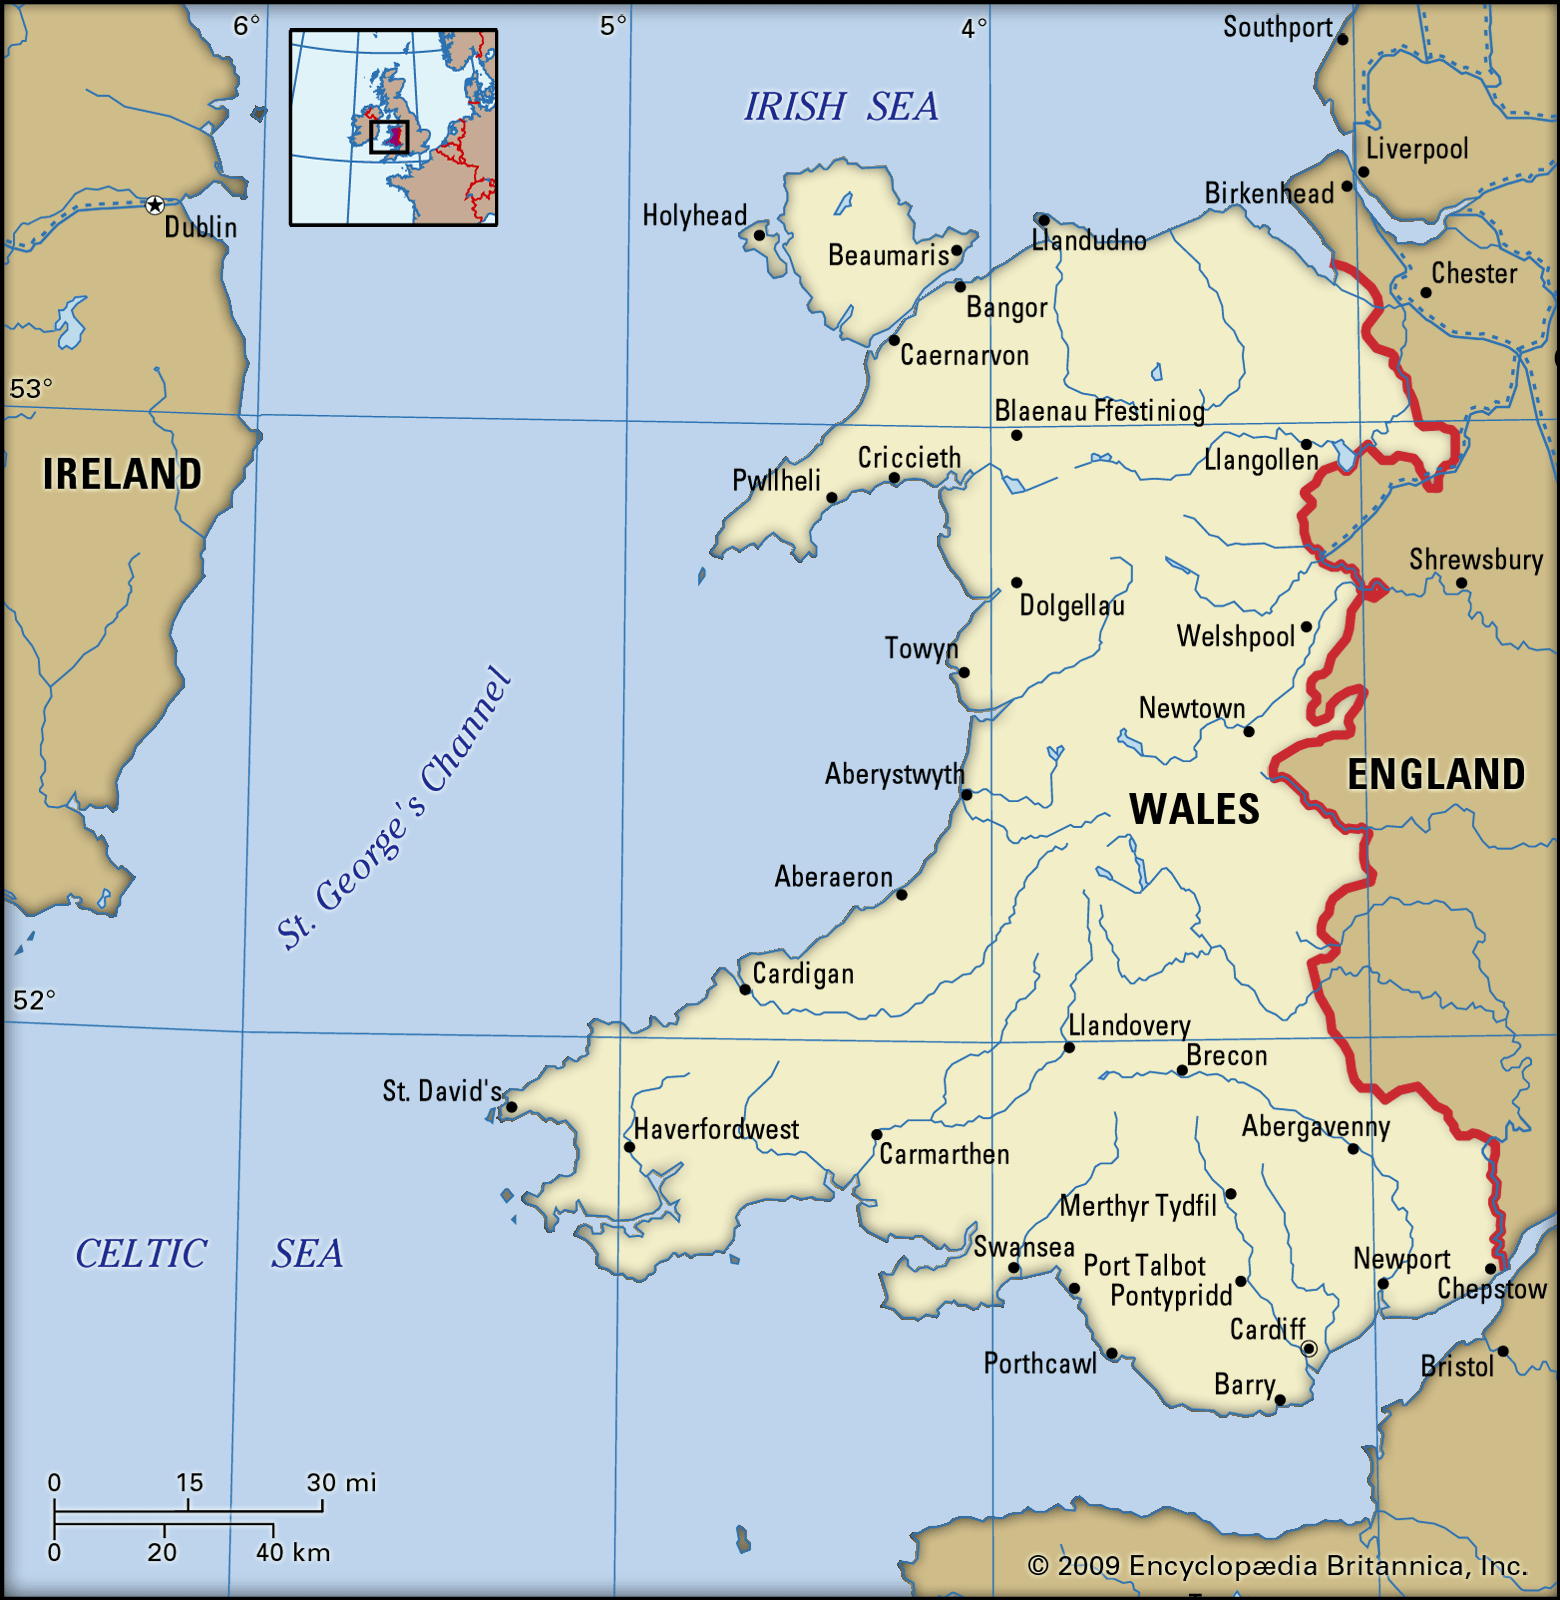 https://1.bp.blogspot.com/-tQq34FlR5qI/YG4yjVdLmwI/AAAAAAAACXw/cBcpjpuUnkIdWRoQgvTlVunloqutRJEYwCLcBGAsYHQ/s1600/Wales-map.jpg